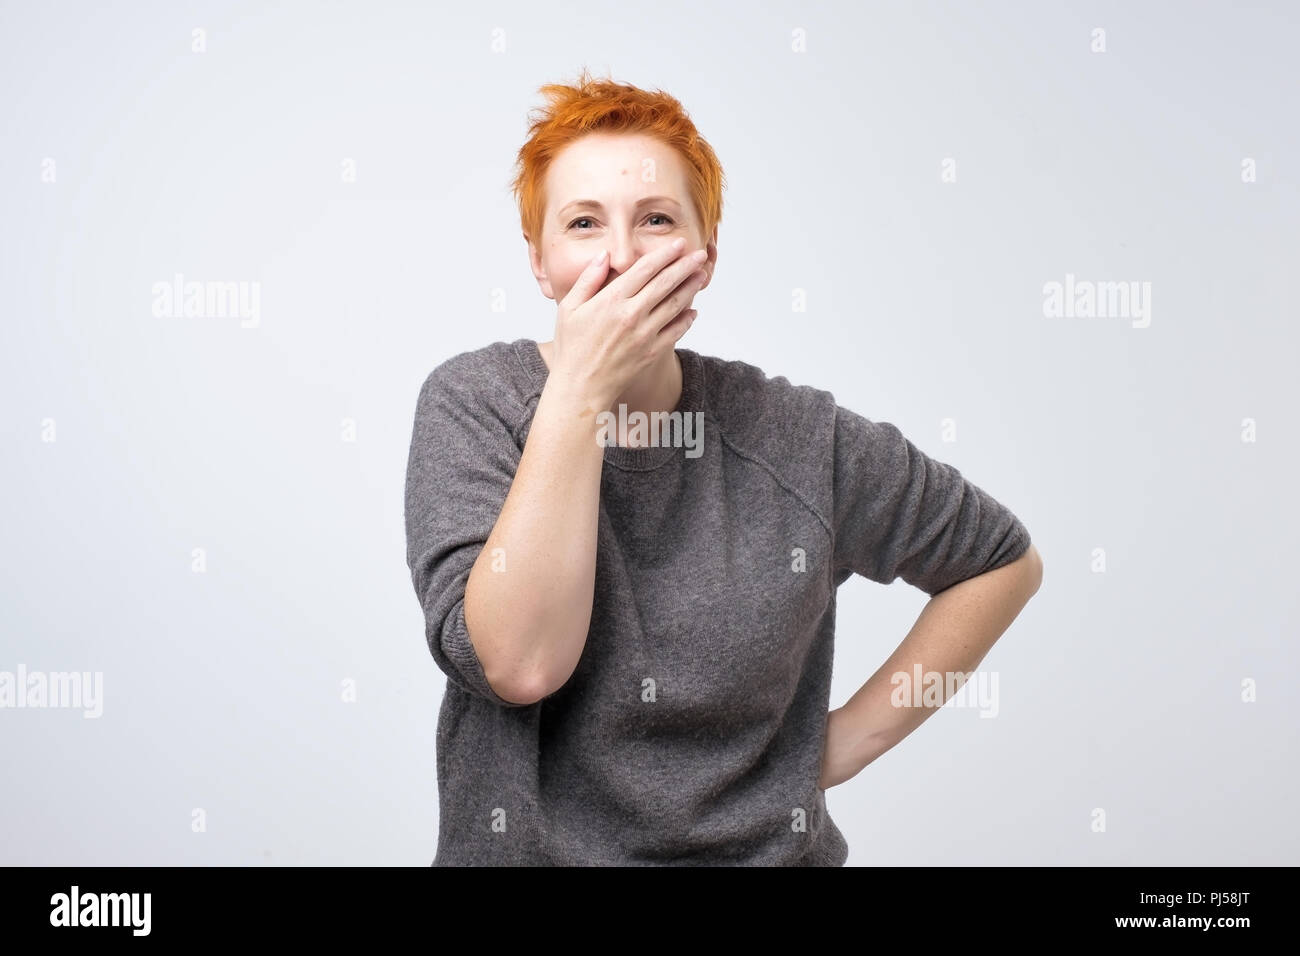 Funny donna matura con corti capelli rossi chiude la sua bocca con palm audizione divertente scherzo. Foto Stock